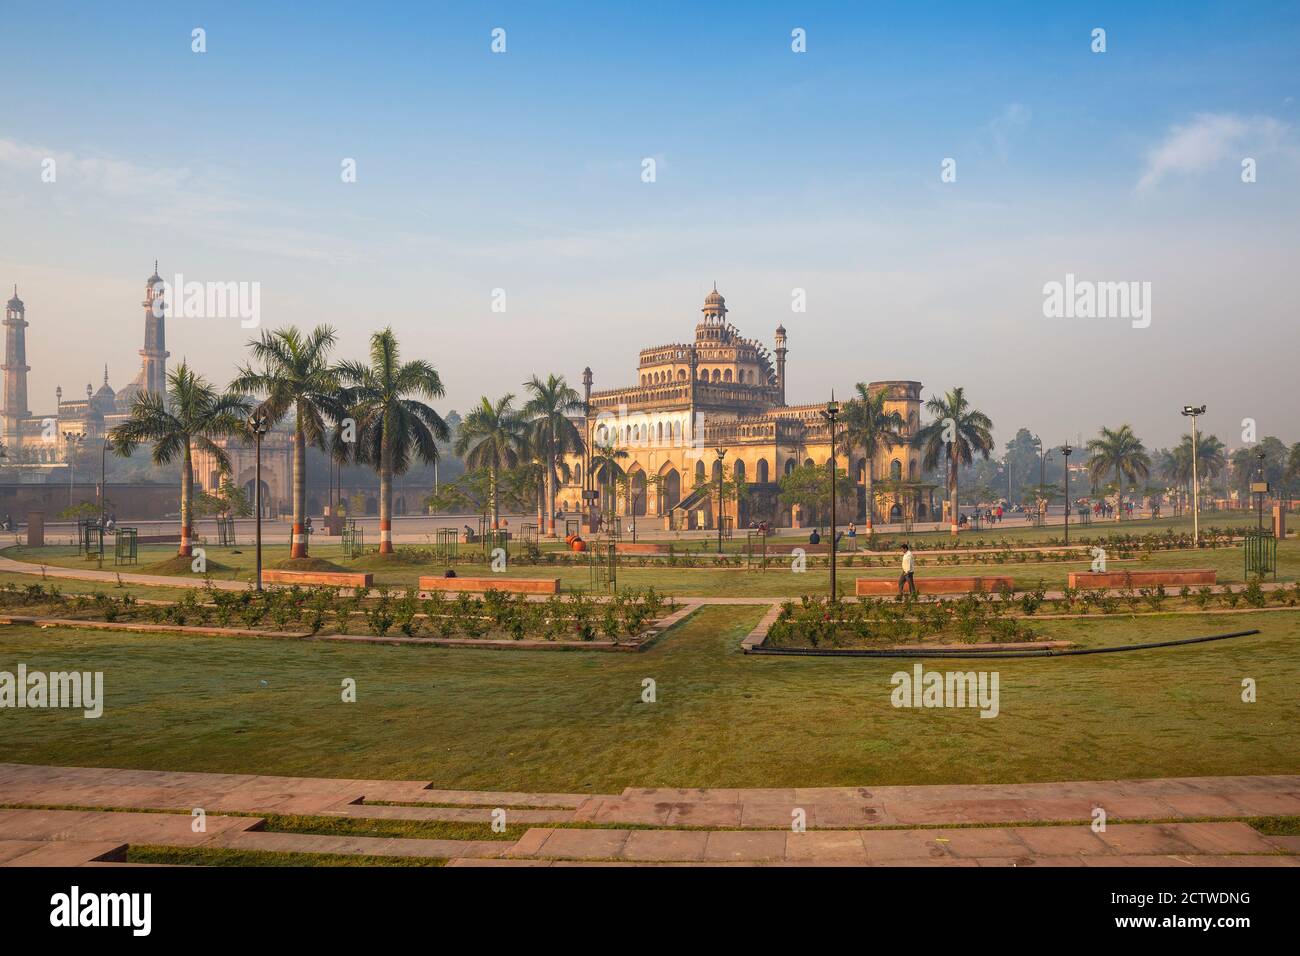 Inde, Uttar Pradesh, Lucknow, Rumi Darwaza avec la mosquée Asifi sur la gauche Banque D'Images